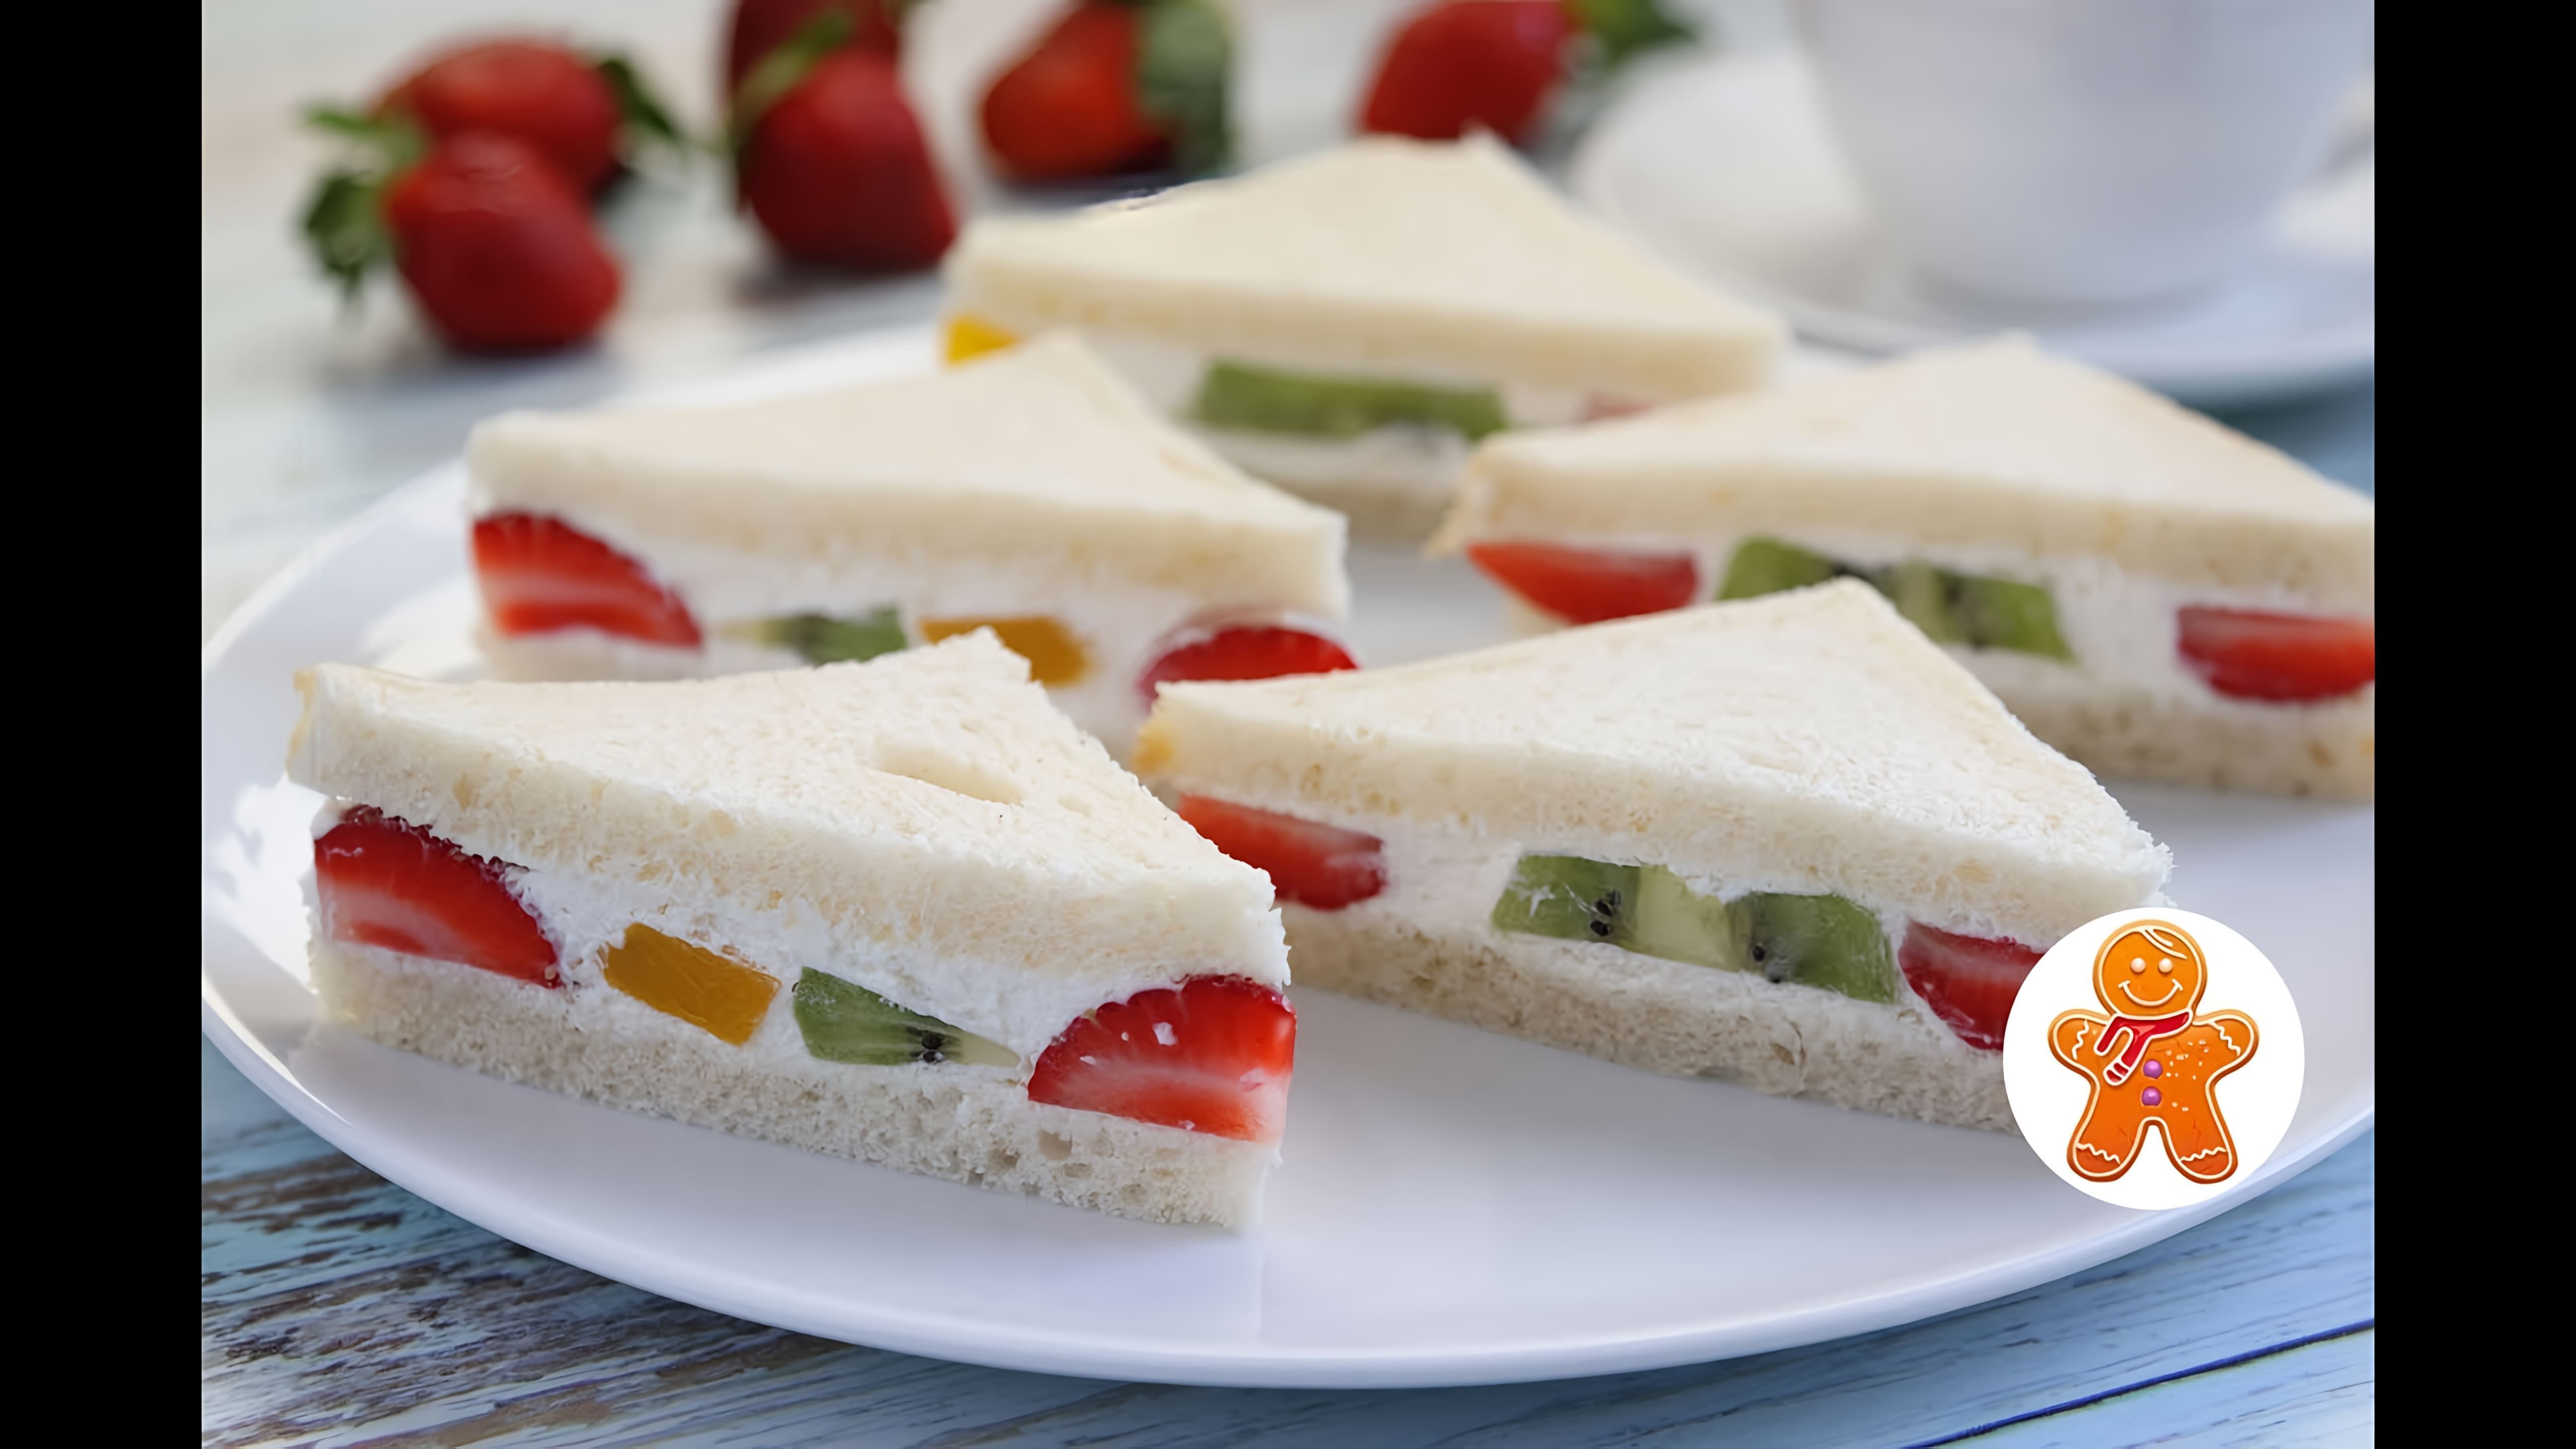 В этом видео демонстрируется рецепт японских сэндвичей с фруктами